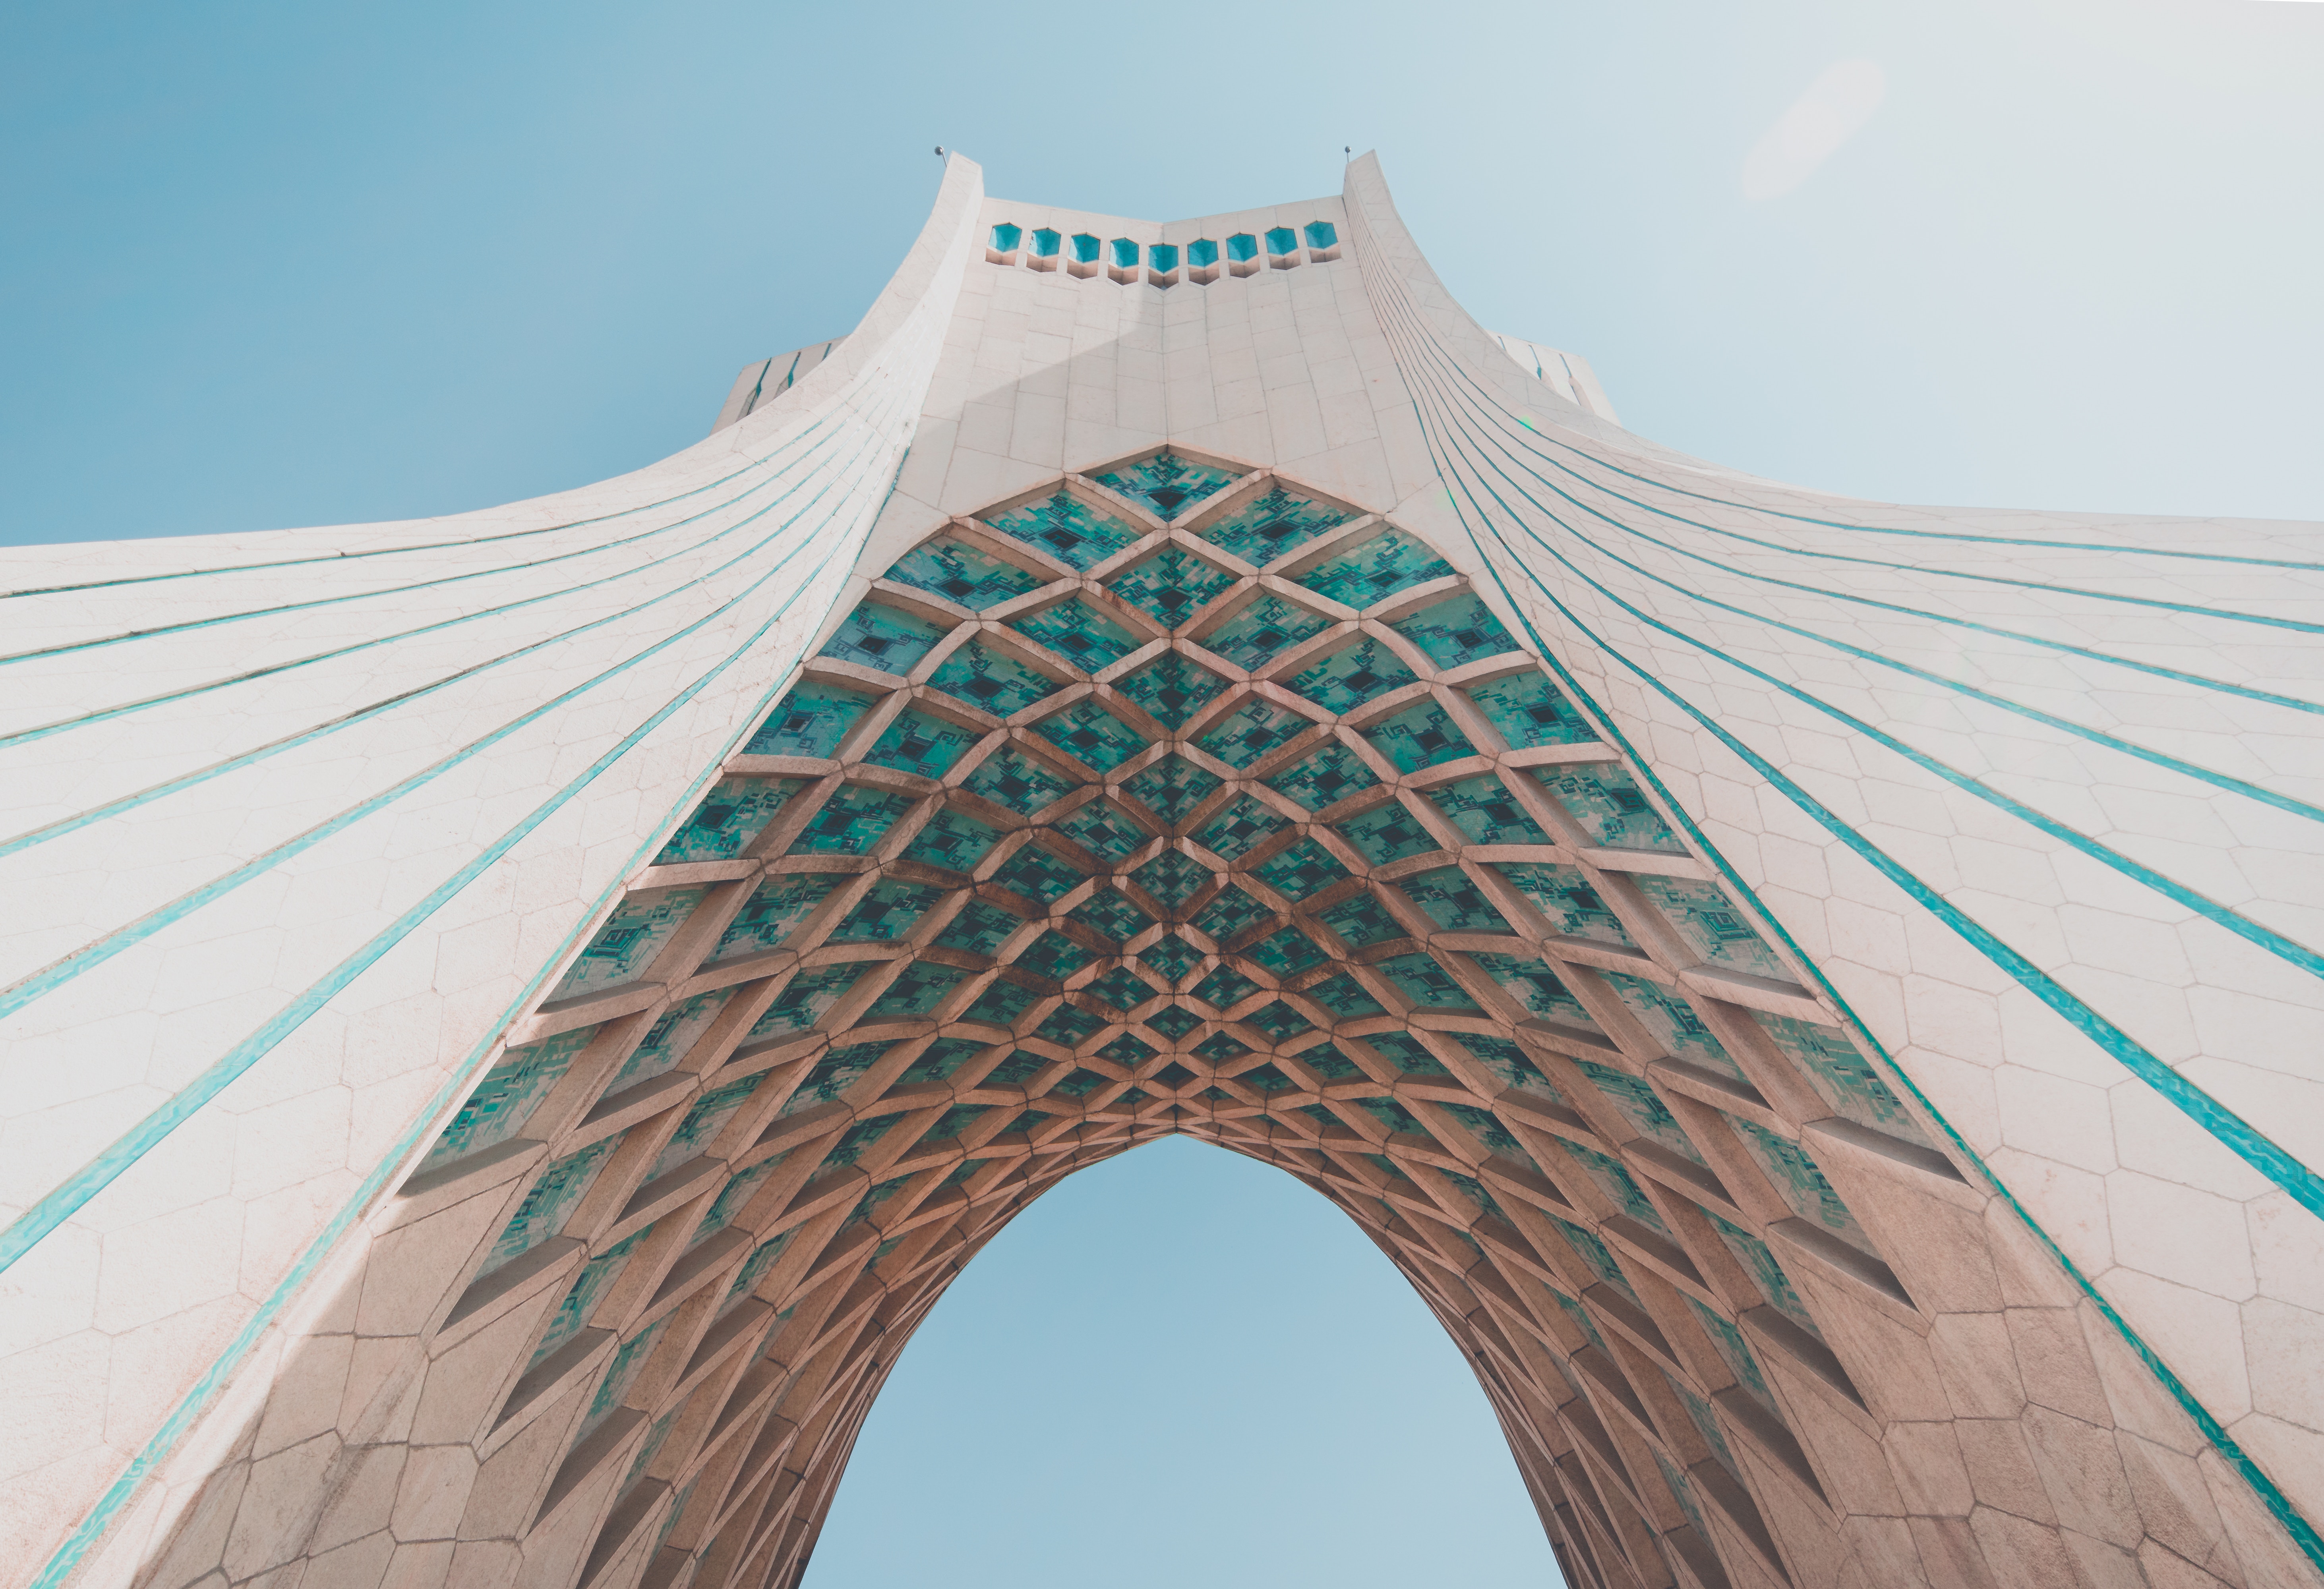 Iran Tehran Architecture 5849x4000